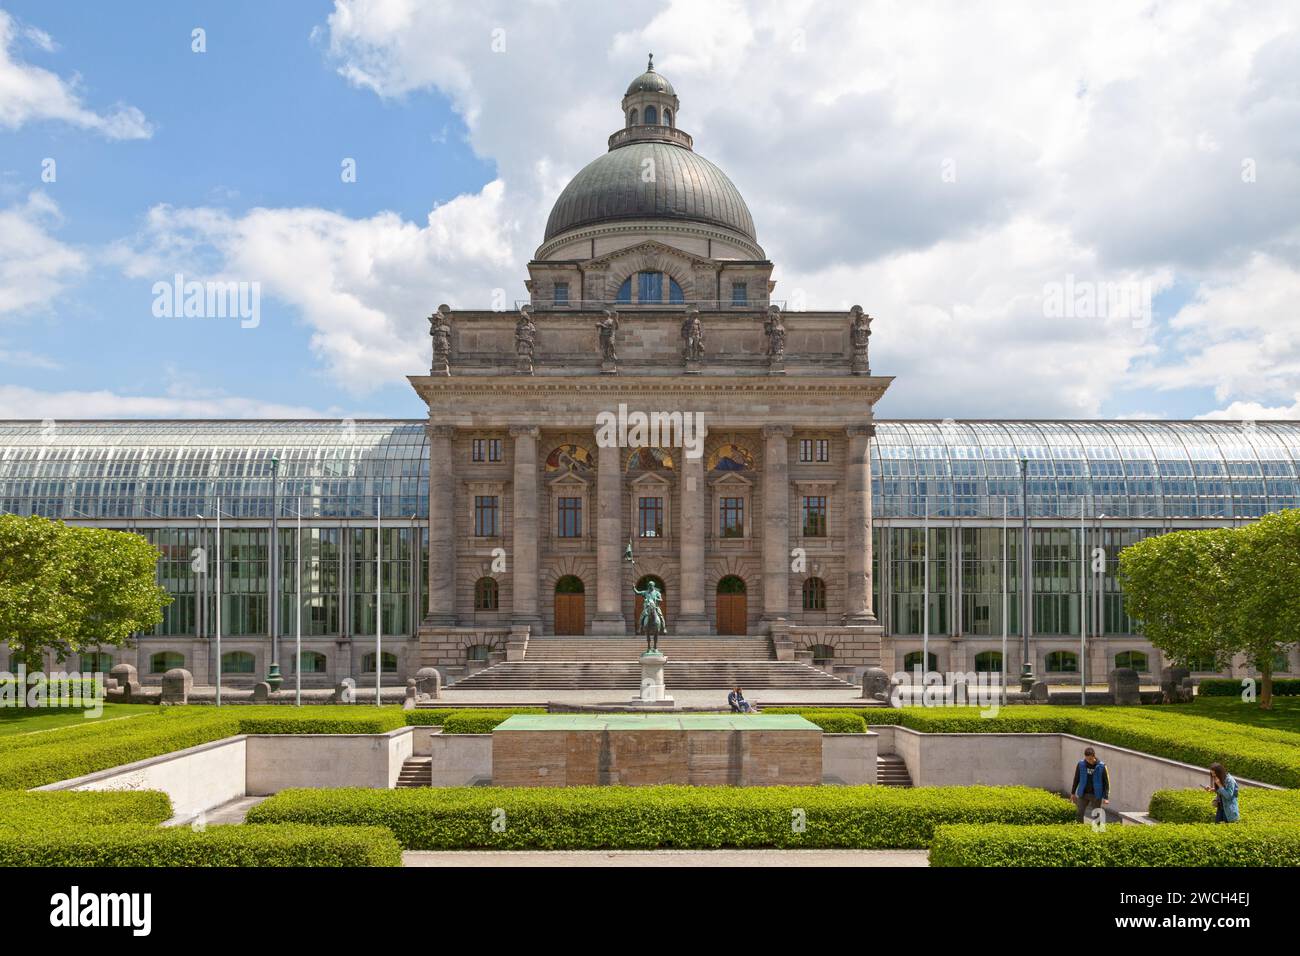 Monaco di Baviera, Germania - maggio 30 2019: La Bayerische Staatskanzlei (Cancelleria di Stato bavarese) è il nome di un'agenzia statale dello Stato libero tedesco di BAV Foto Stock